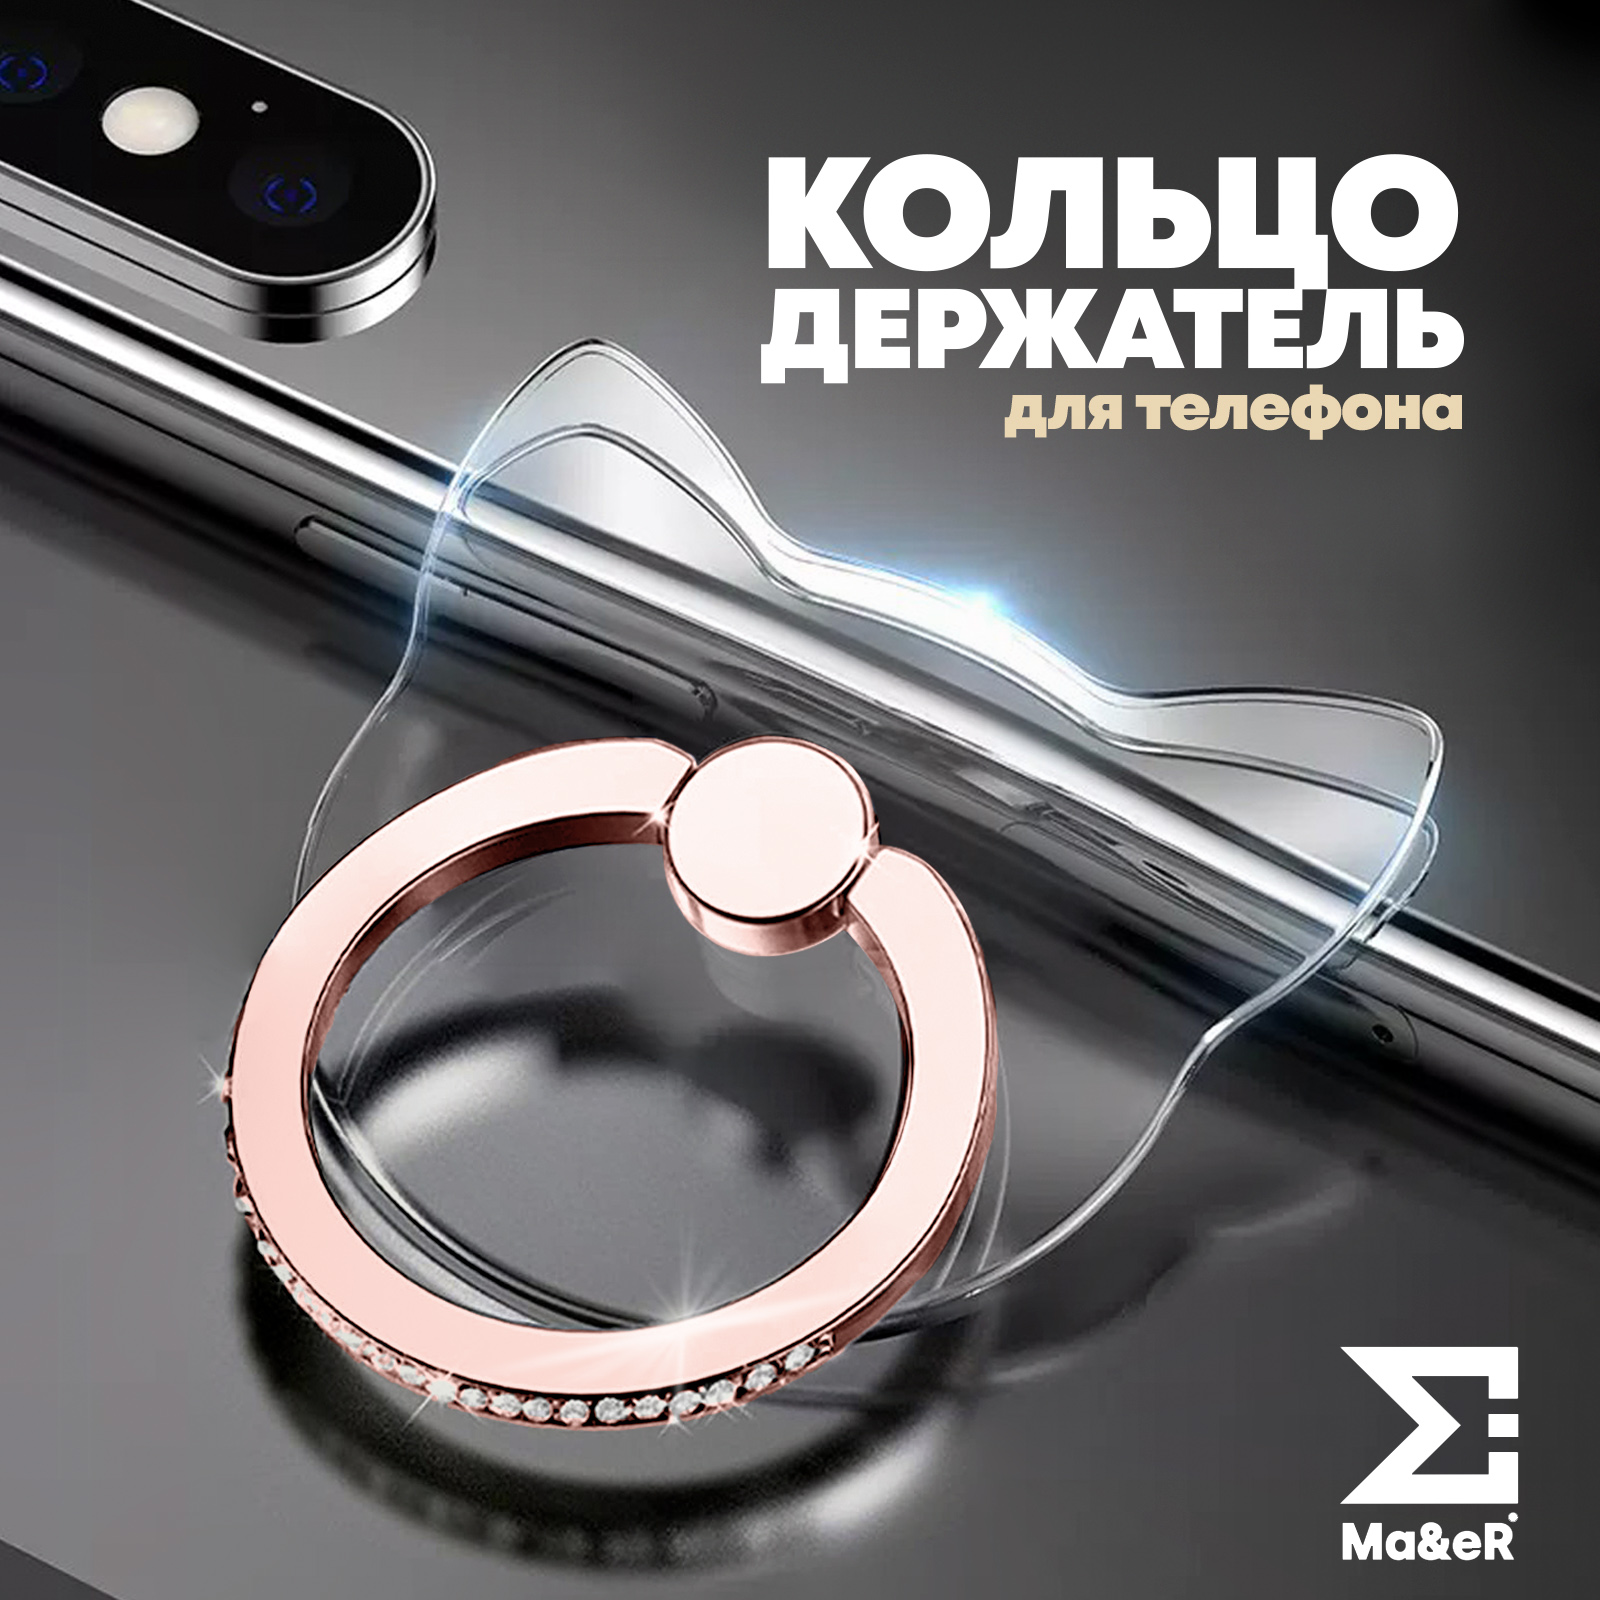 Попсокет для телефона кольцо держатель прозрачный со стразами золото